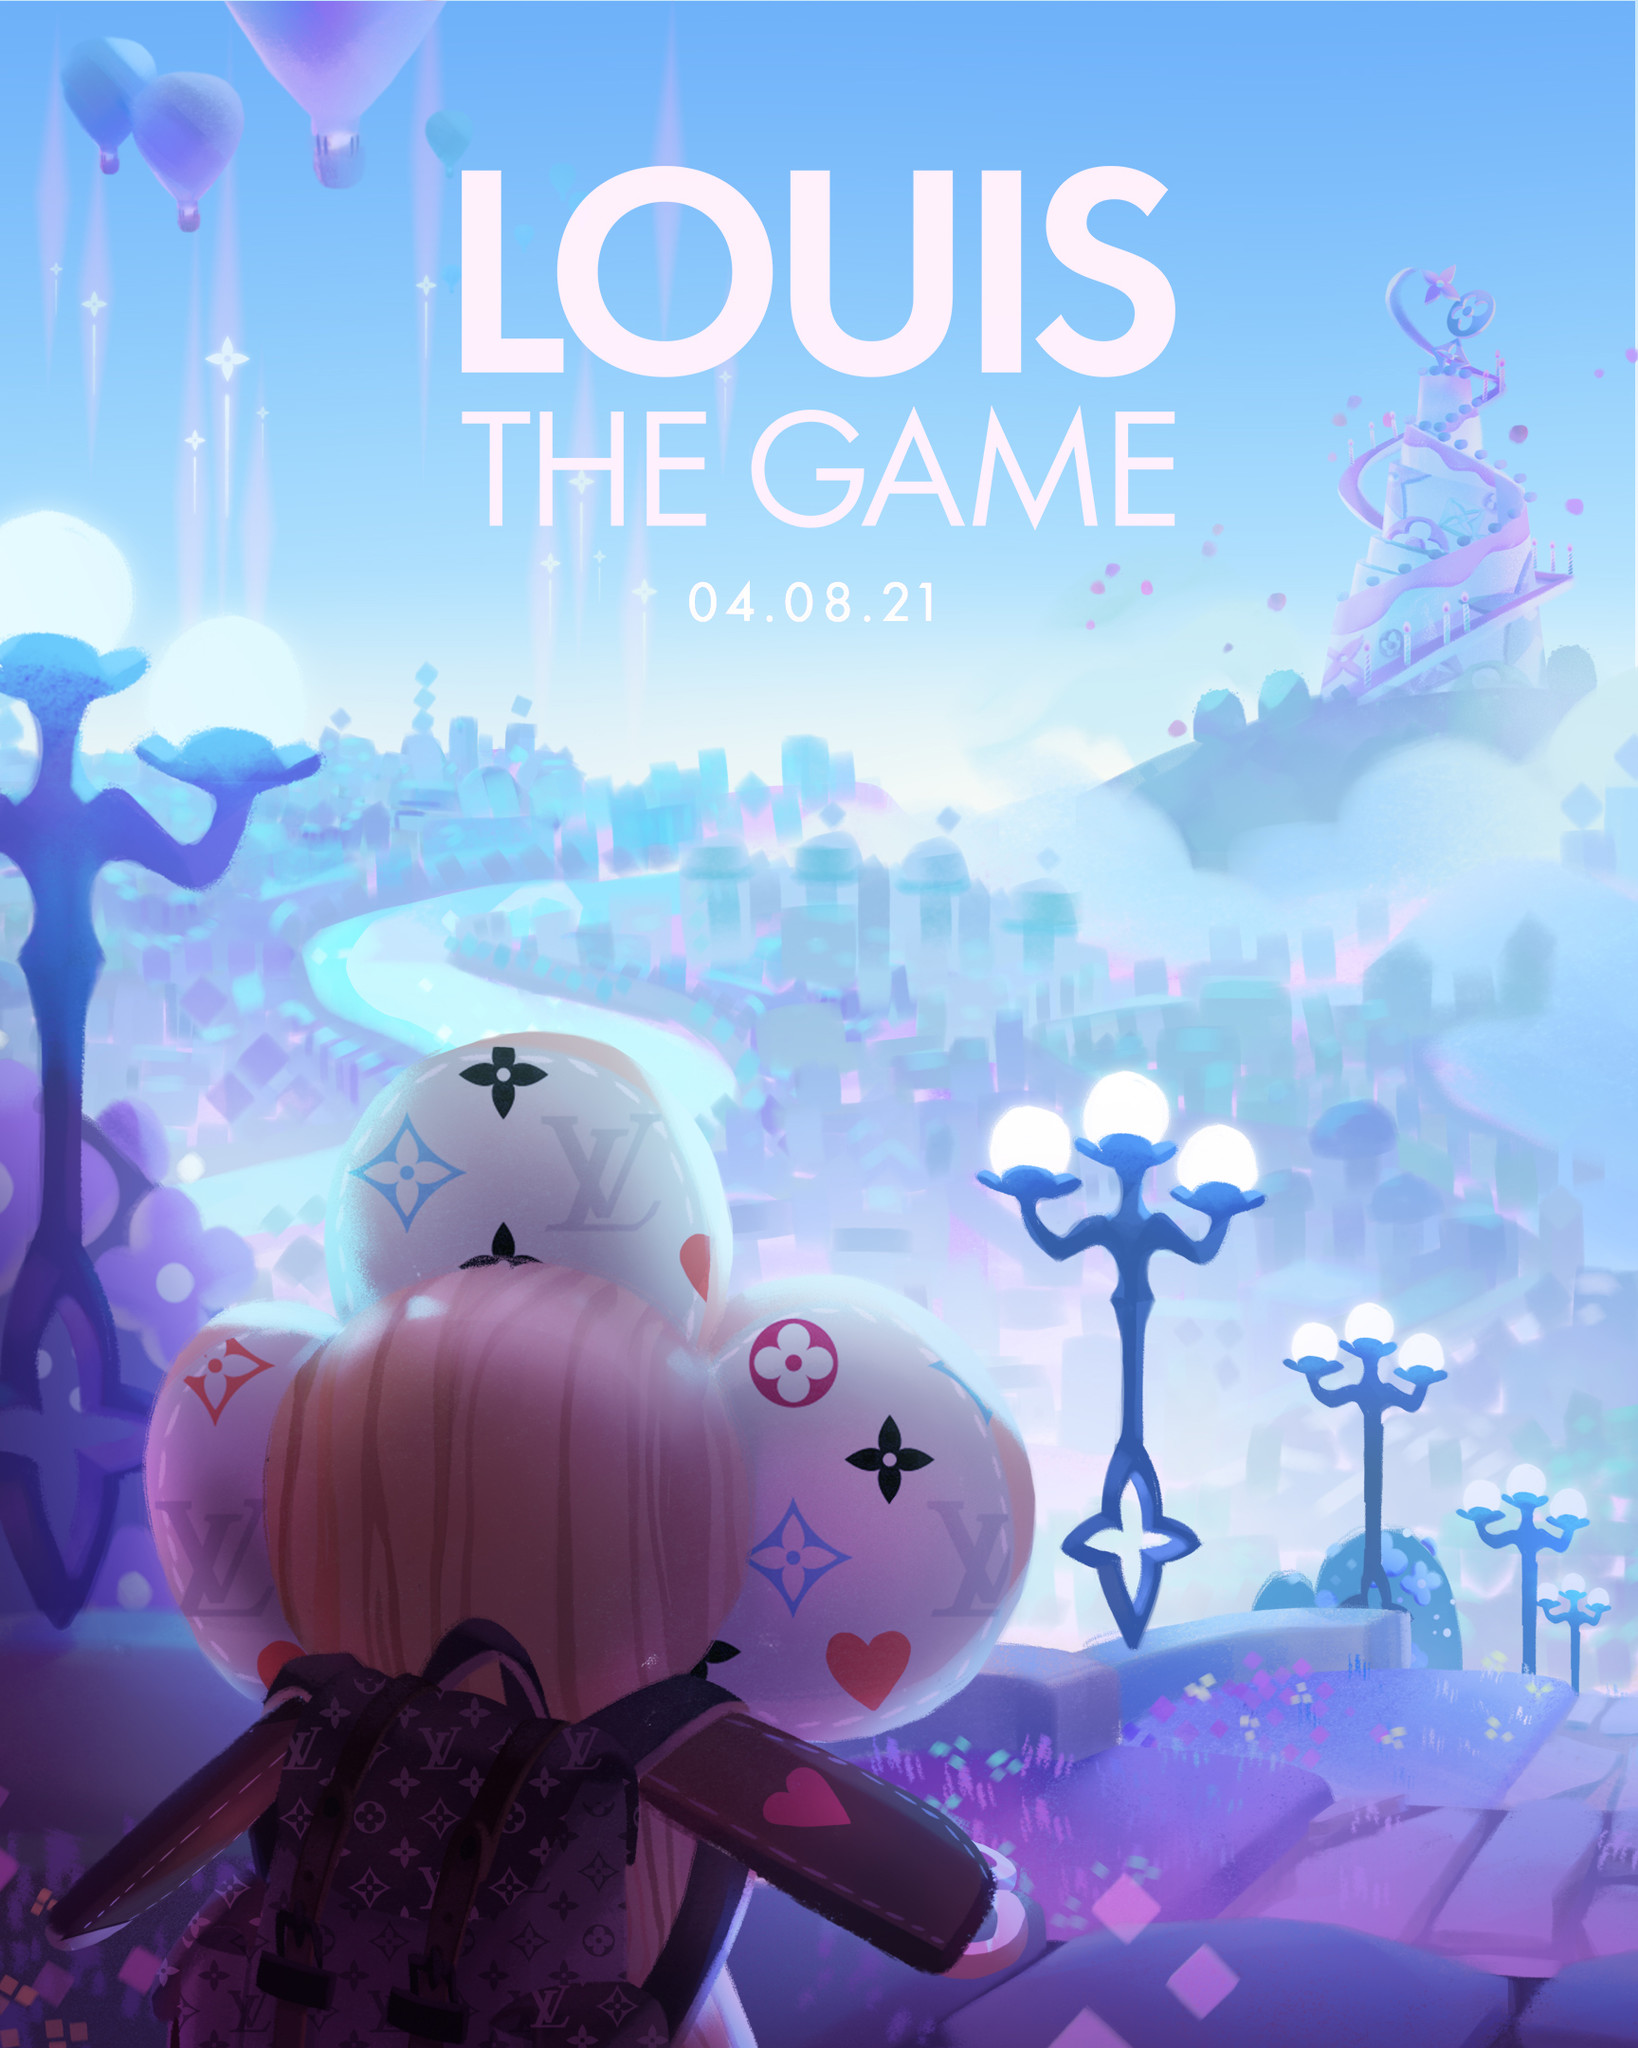 ルイ・ヴィトン、ゲームアプリ「LOUIS THE GAME」を8/4(水)にローンチ